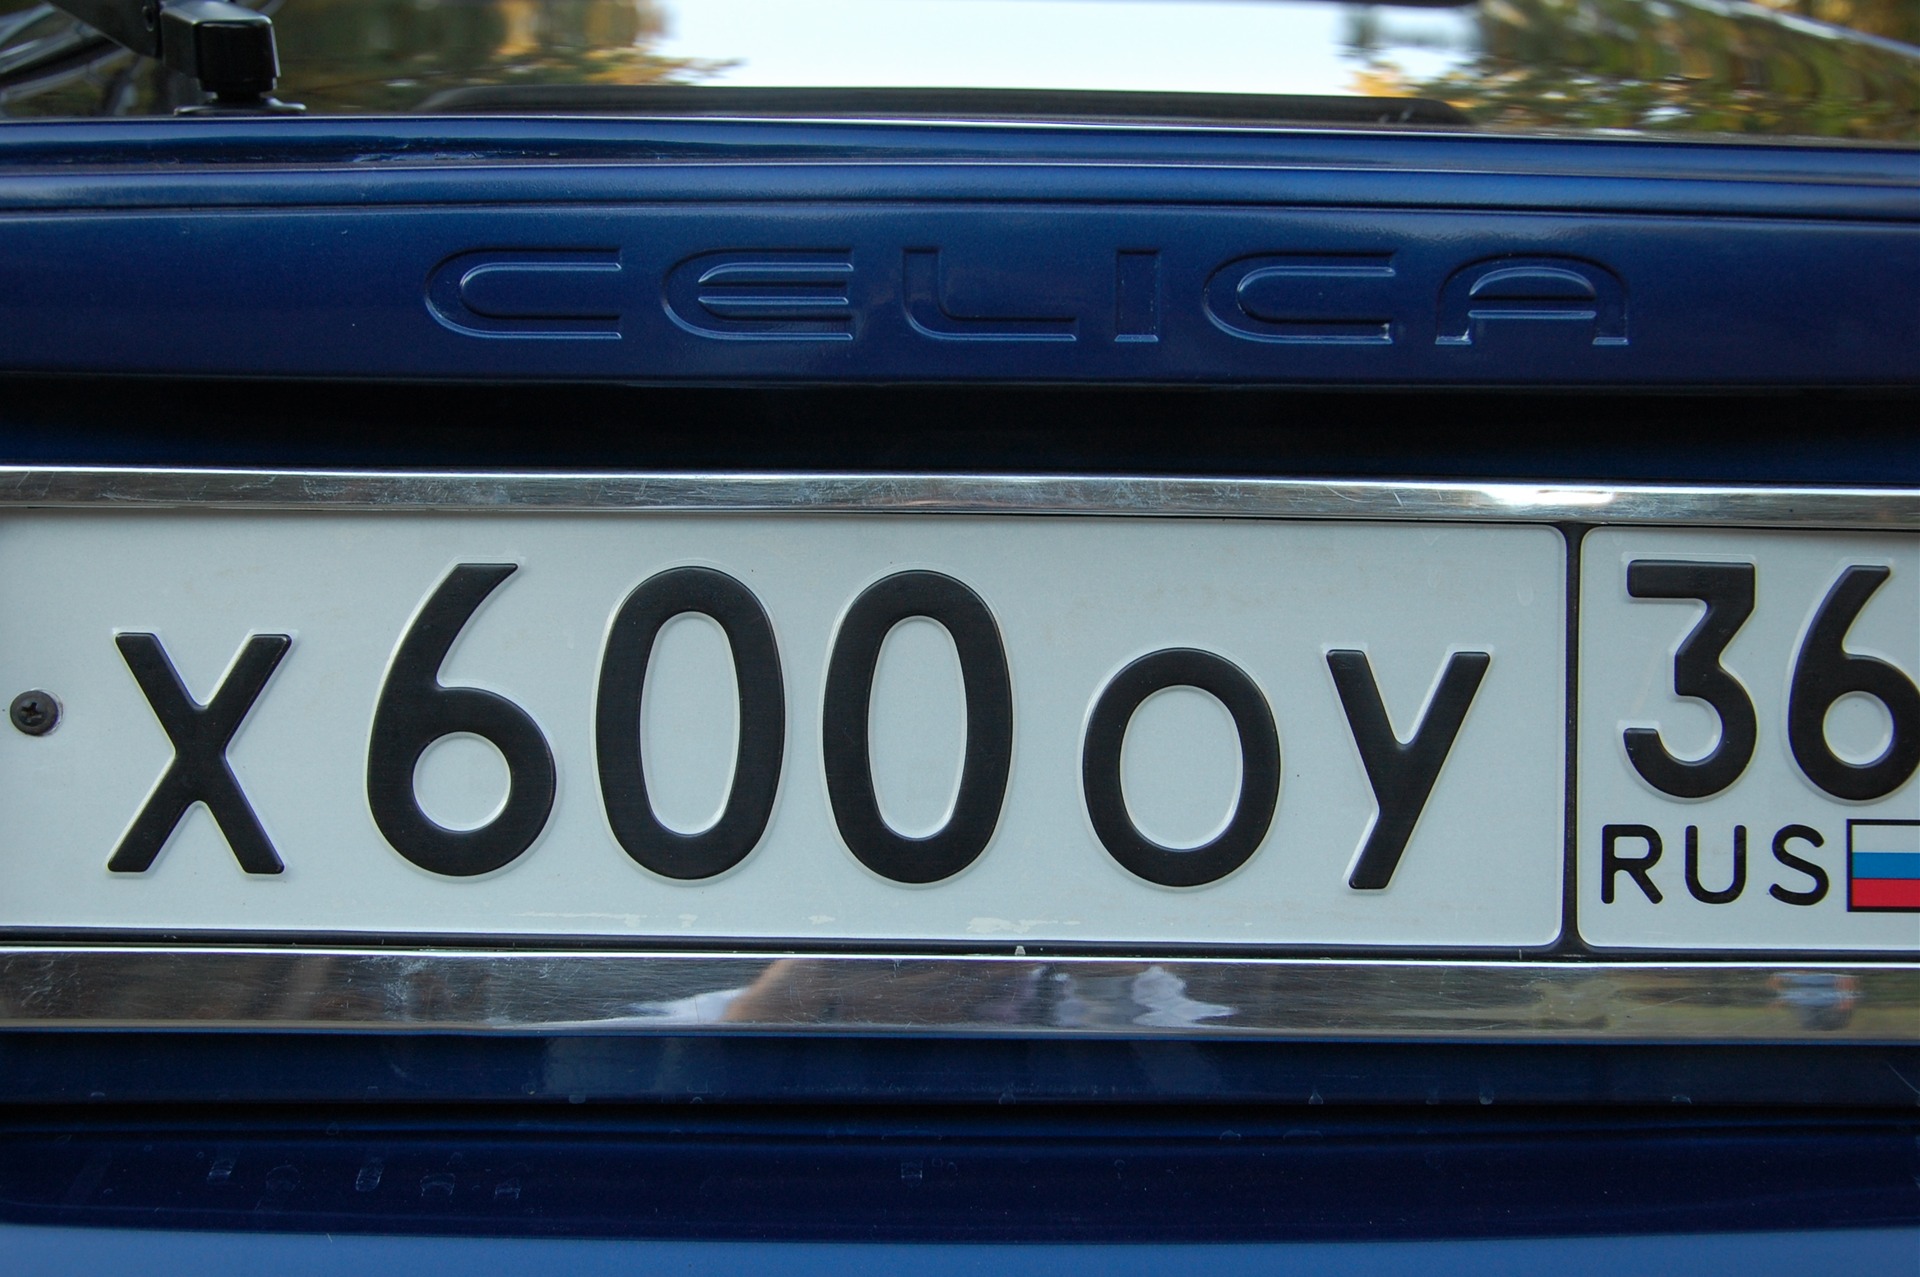     Toyota Celica 18 2003